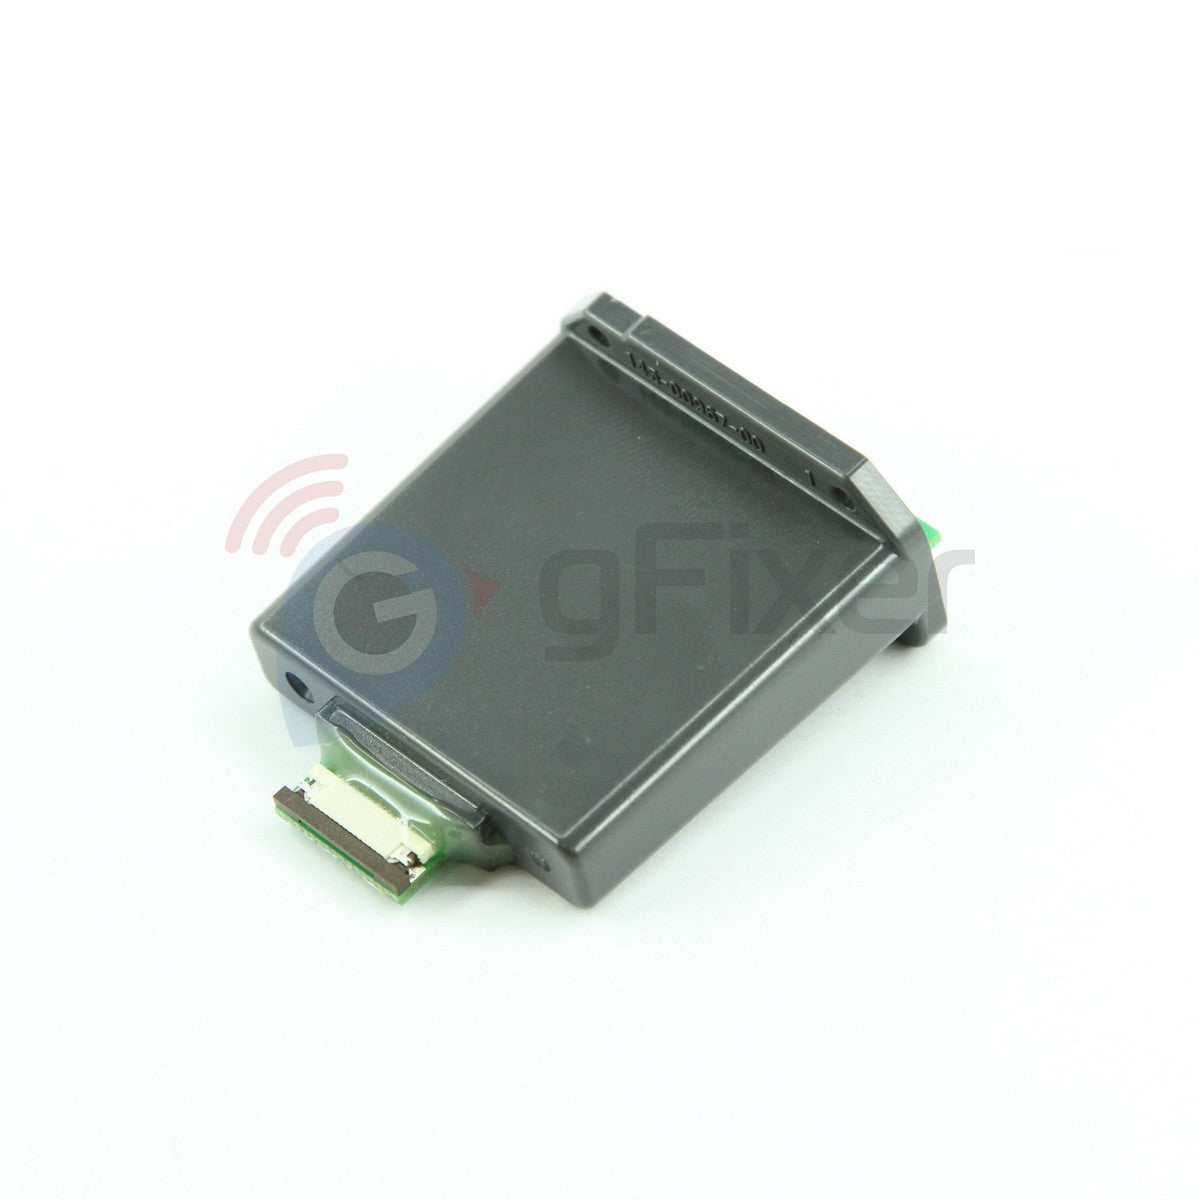 Memory card holder for Garmin GPSMAP 525  New